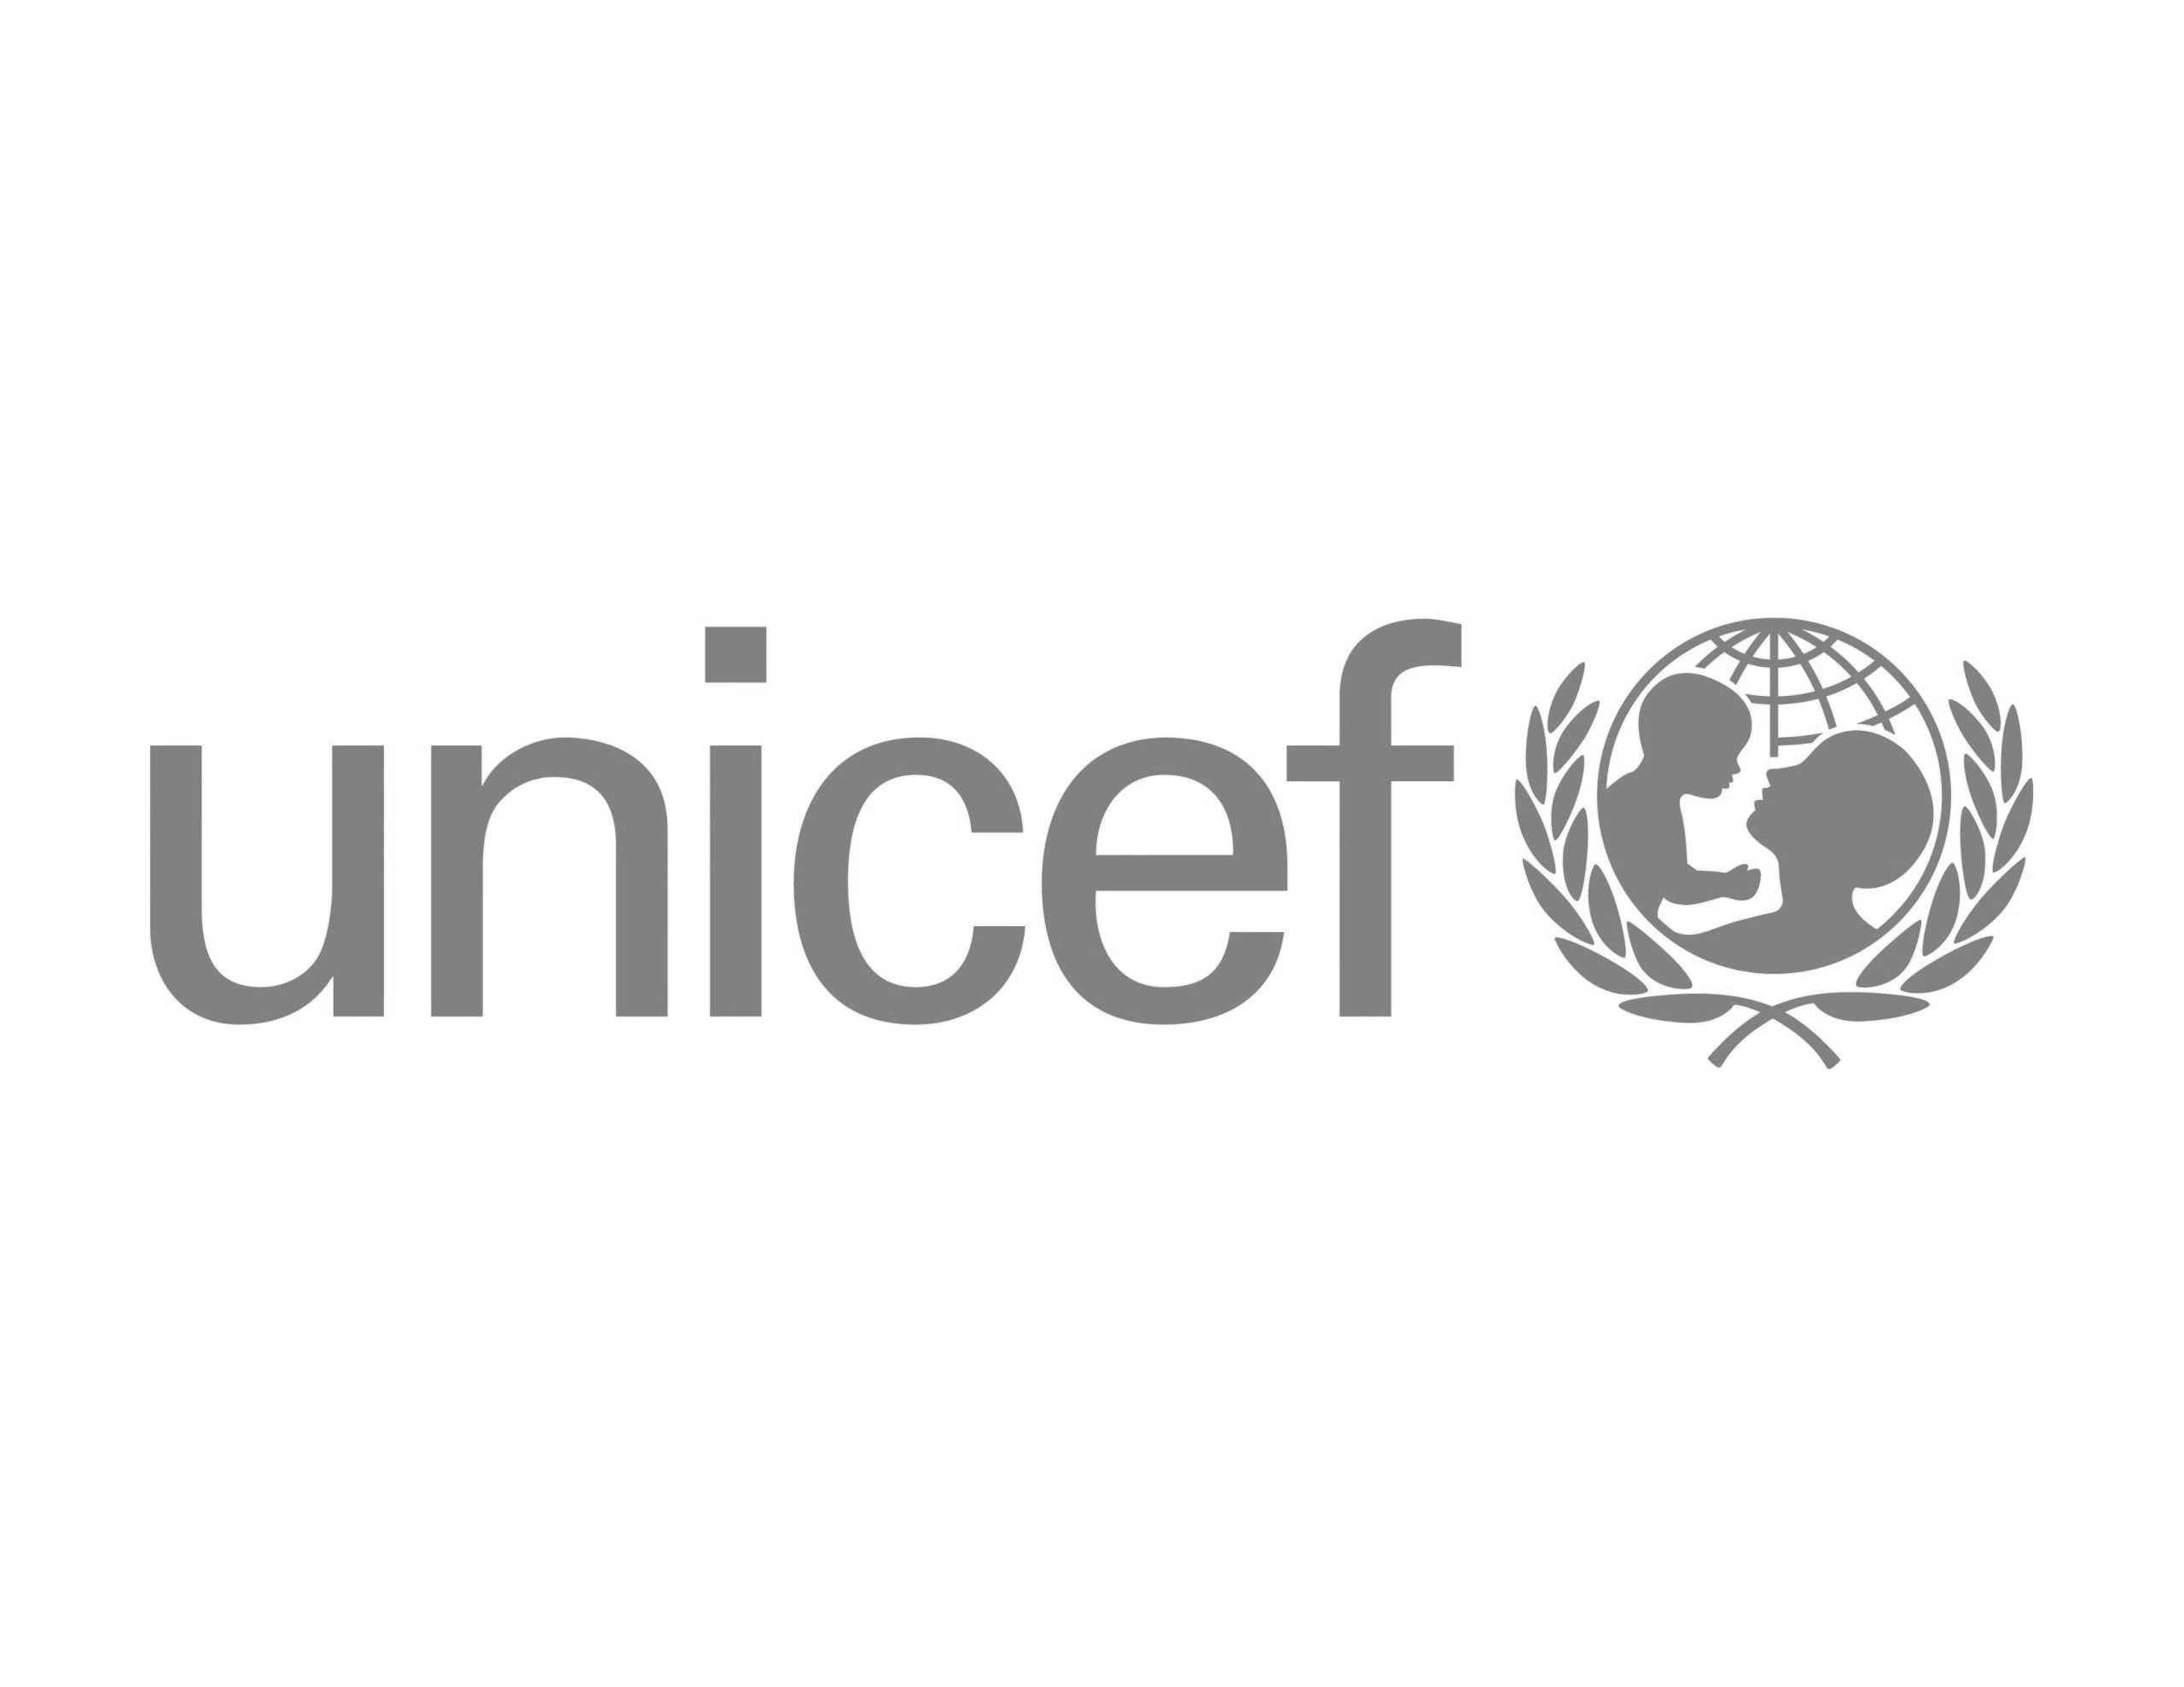 UNICEF GREYSCALED